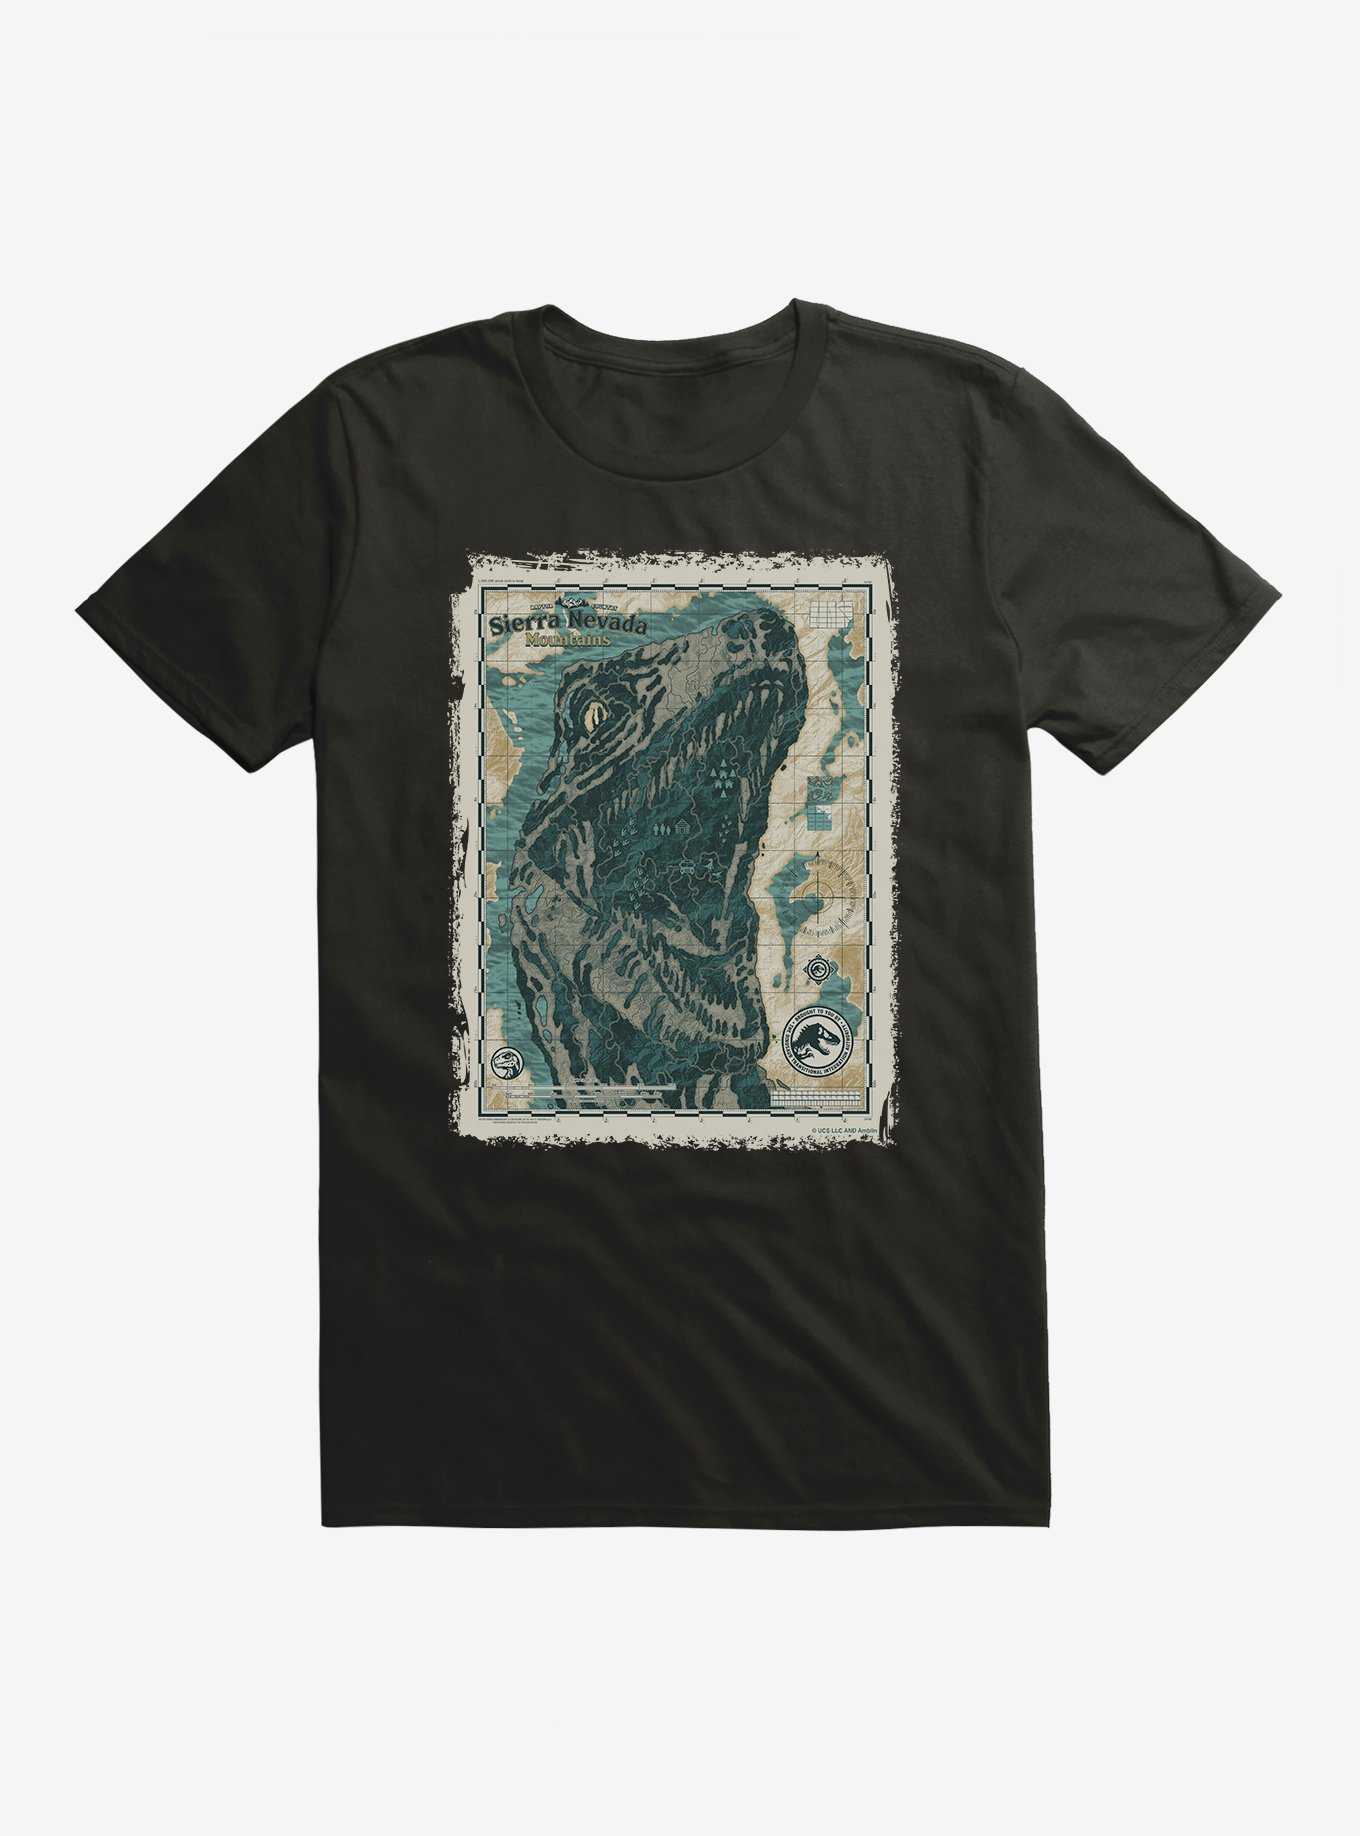 Jurassic World Dominion Sierra Nevada Mountains Map T-Shirt, , hi-res